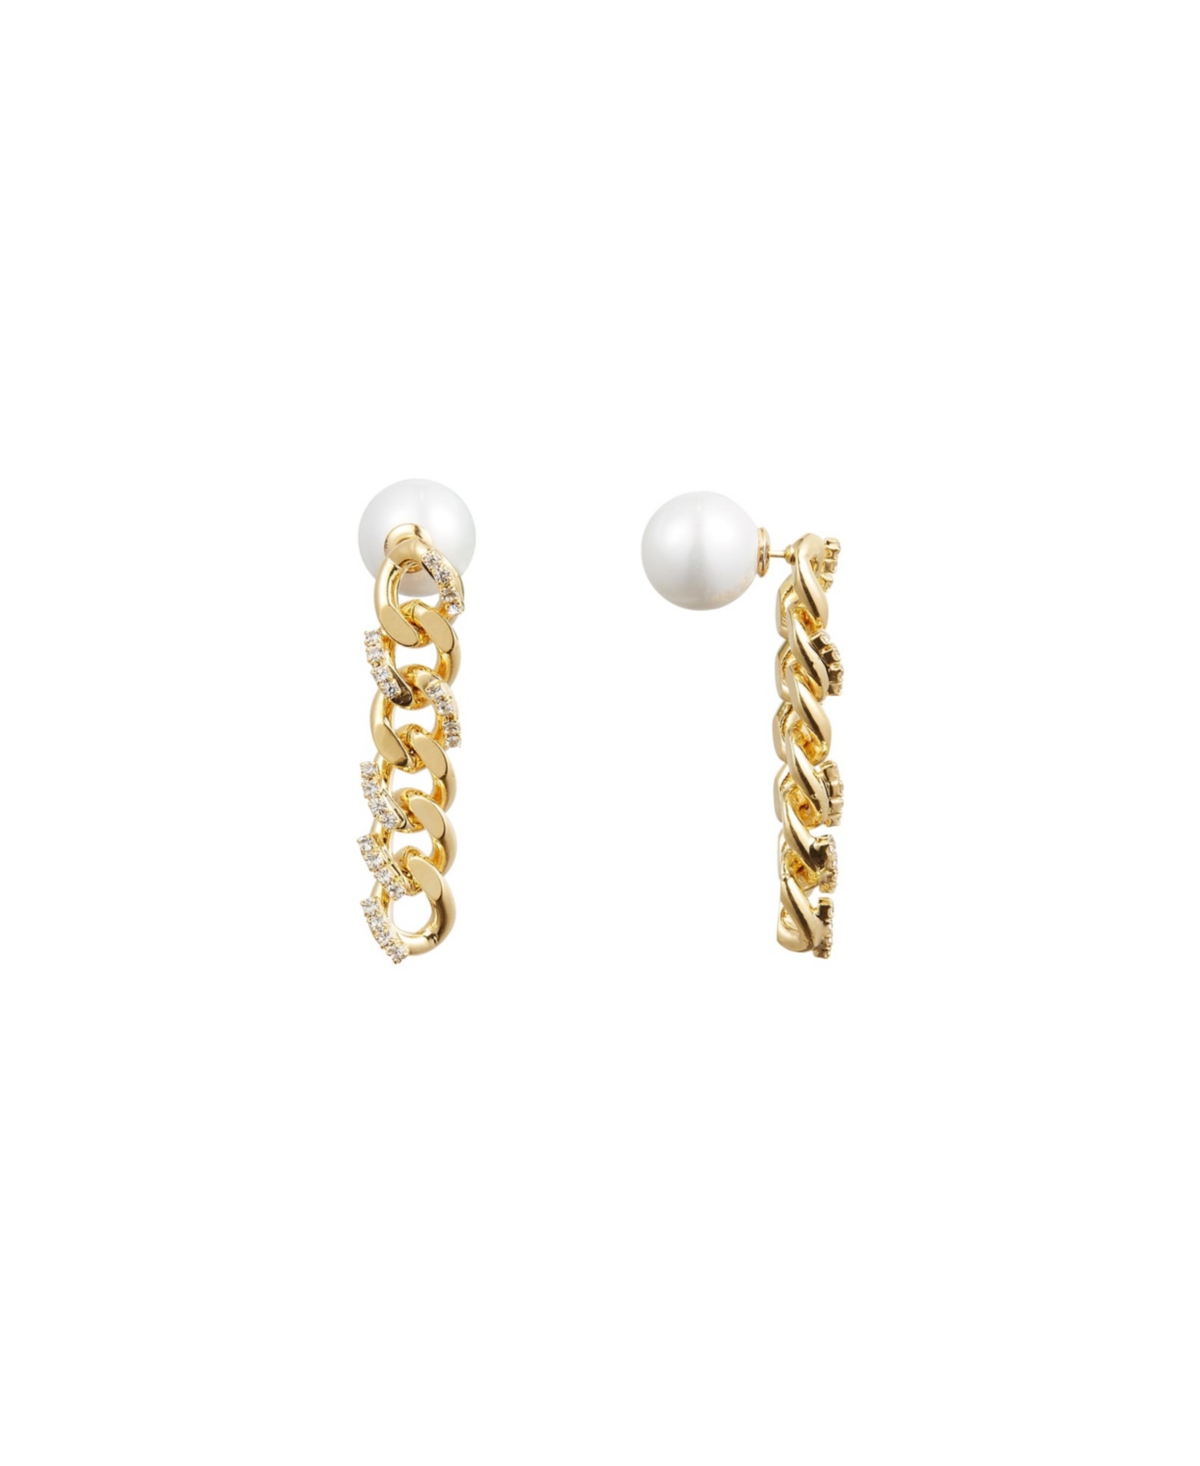 Rhinestone Chain Earrings - Gold